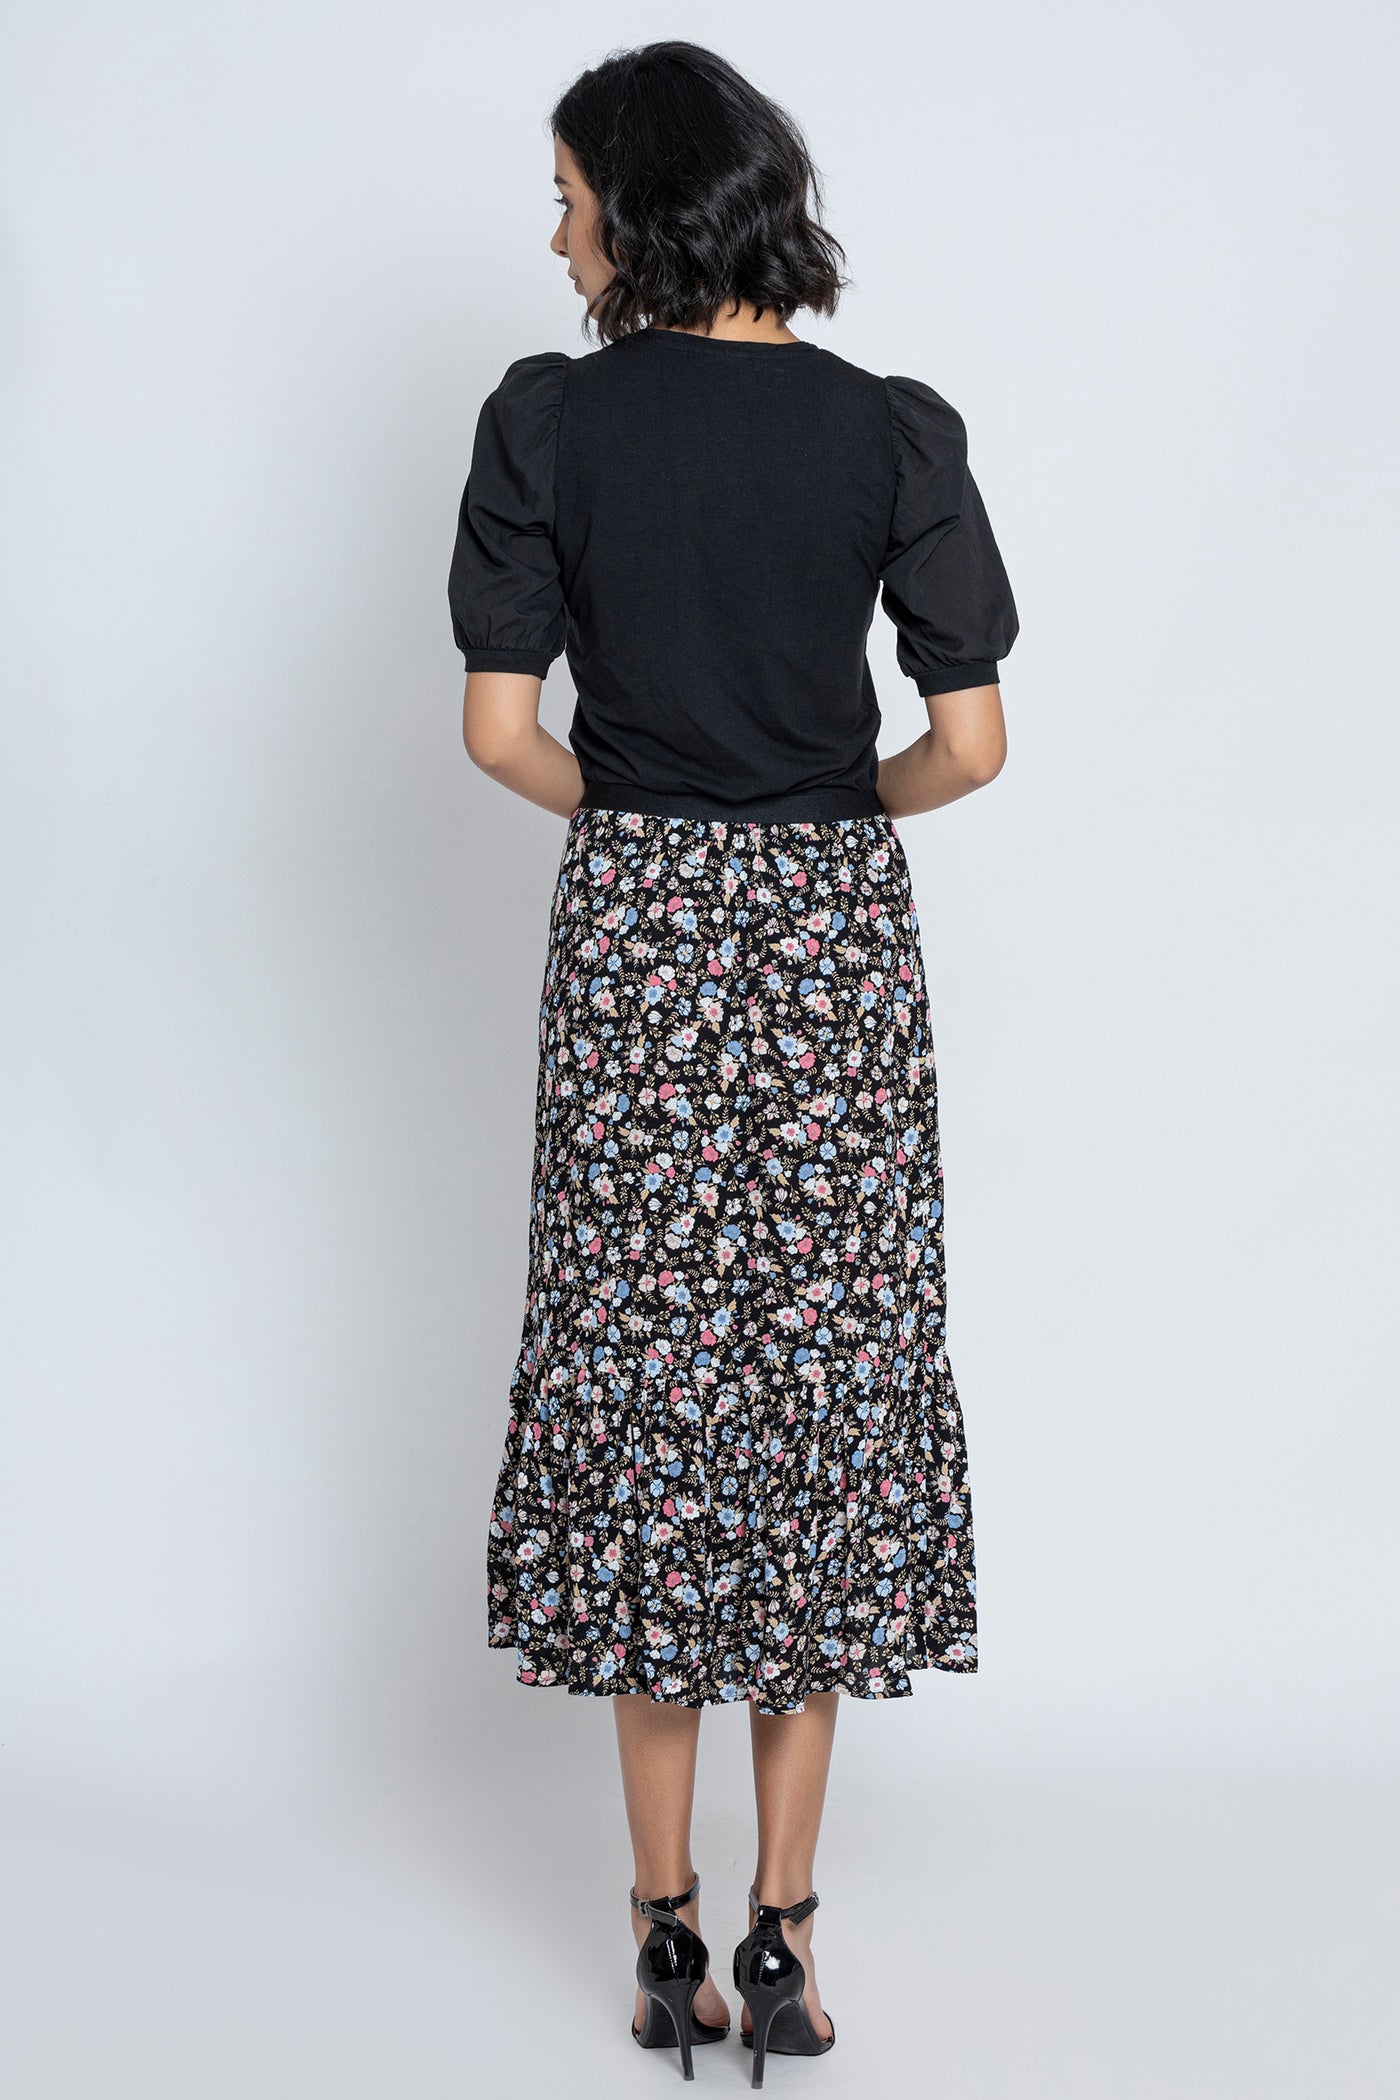 Black Floral Printed Skirt